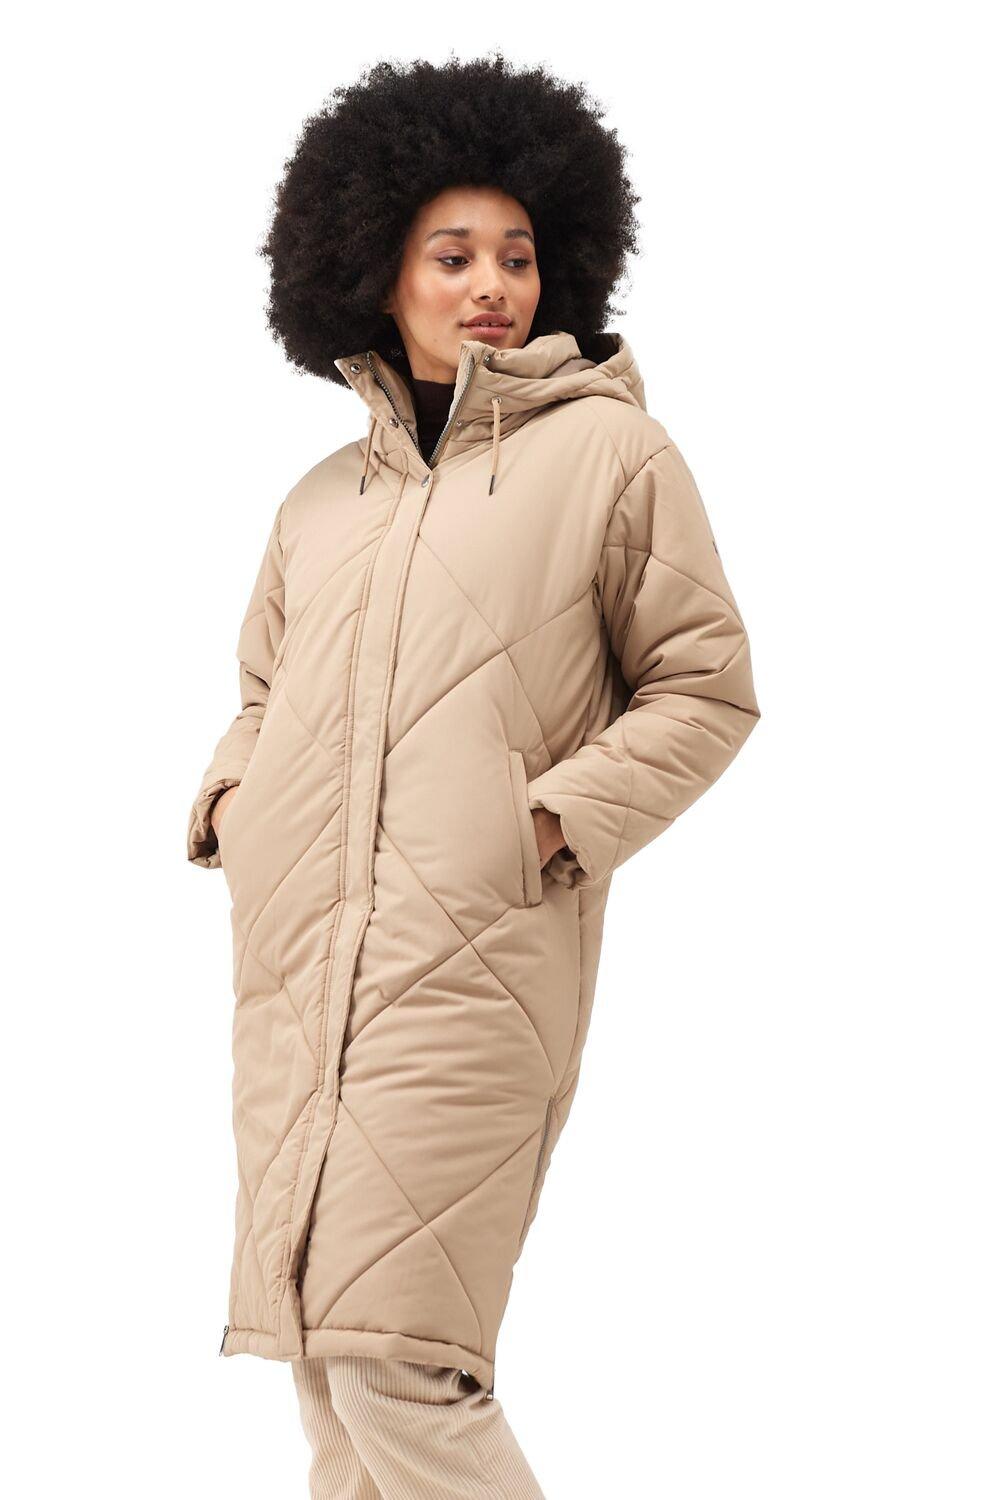 Удлиненная утепленная куртка Cambrie Thermoguard с подкладкой Regatta, кремовый